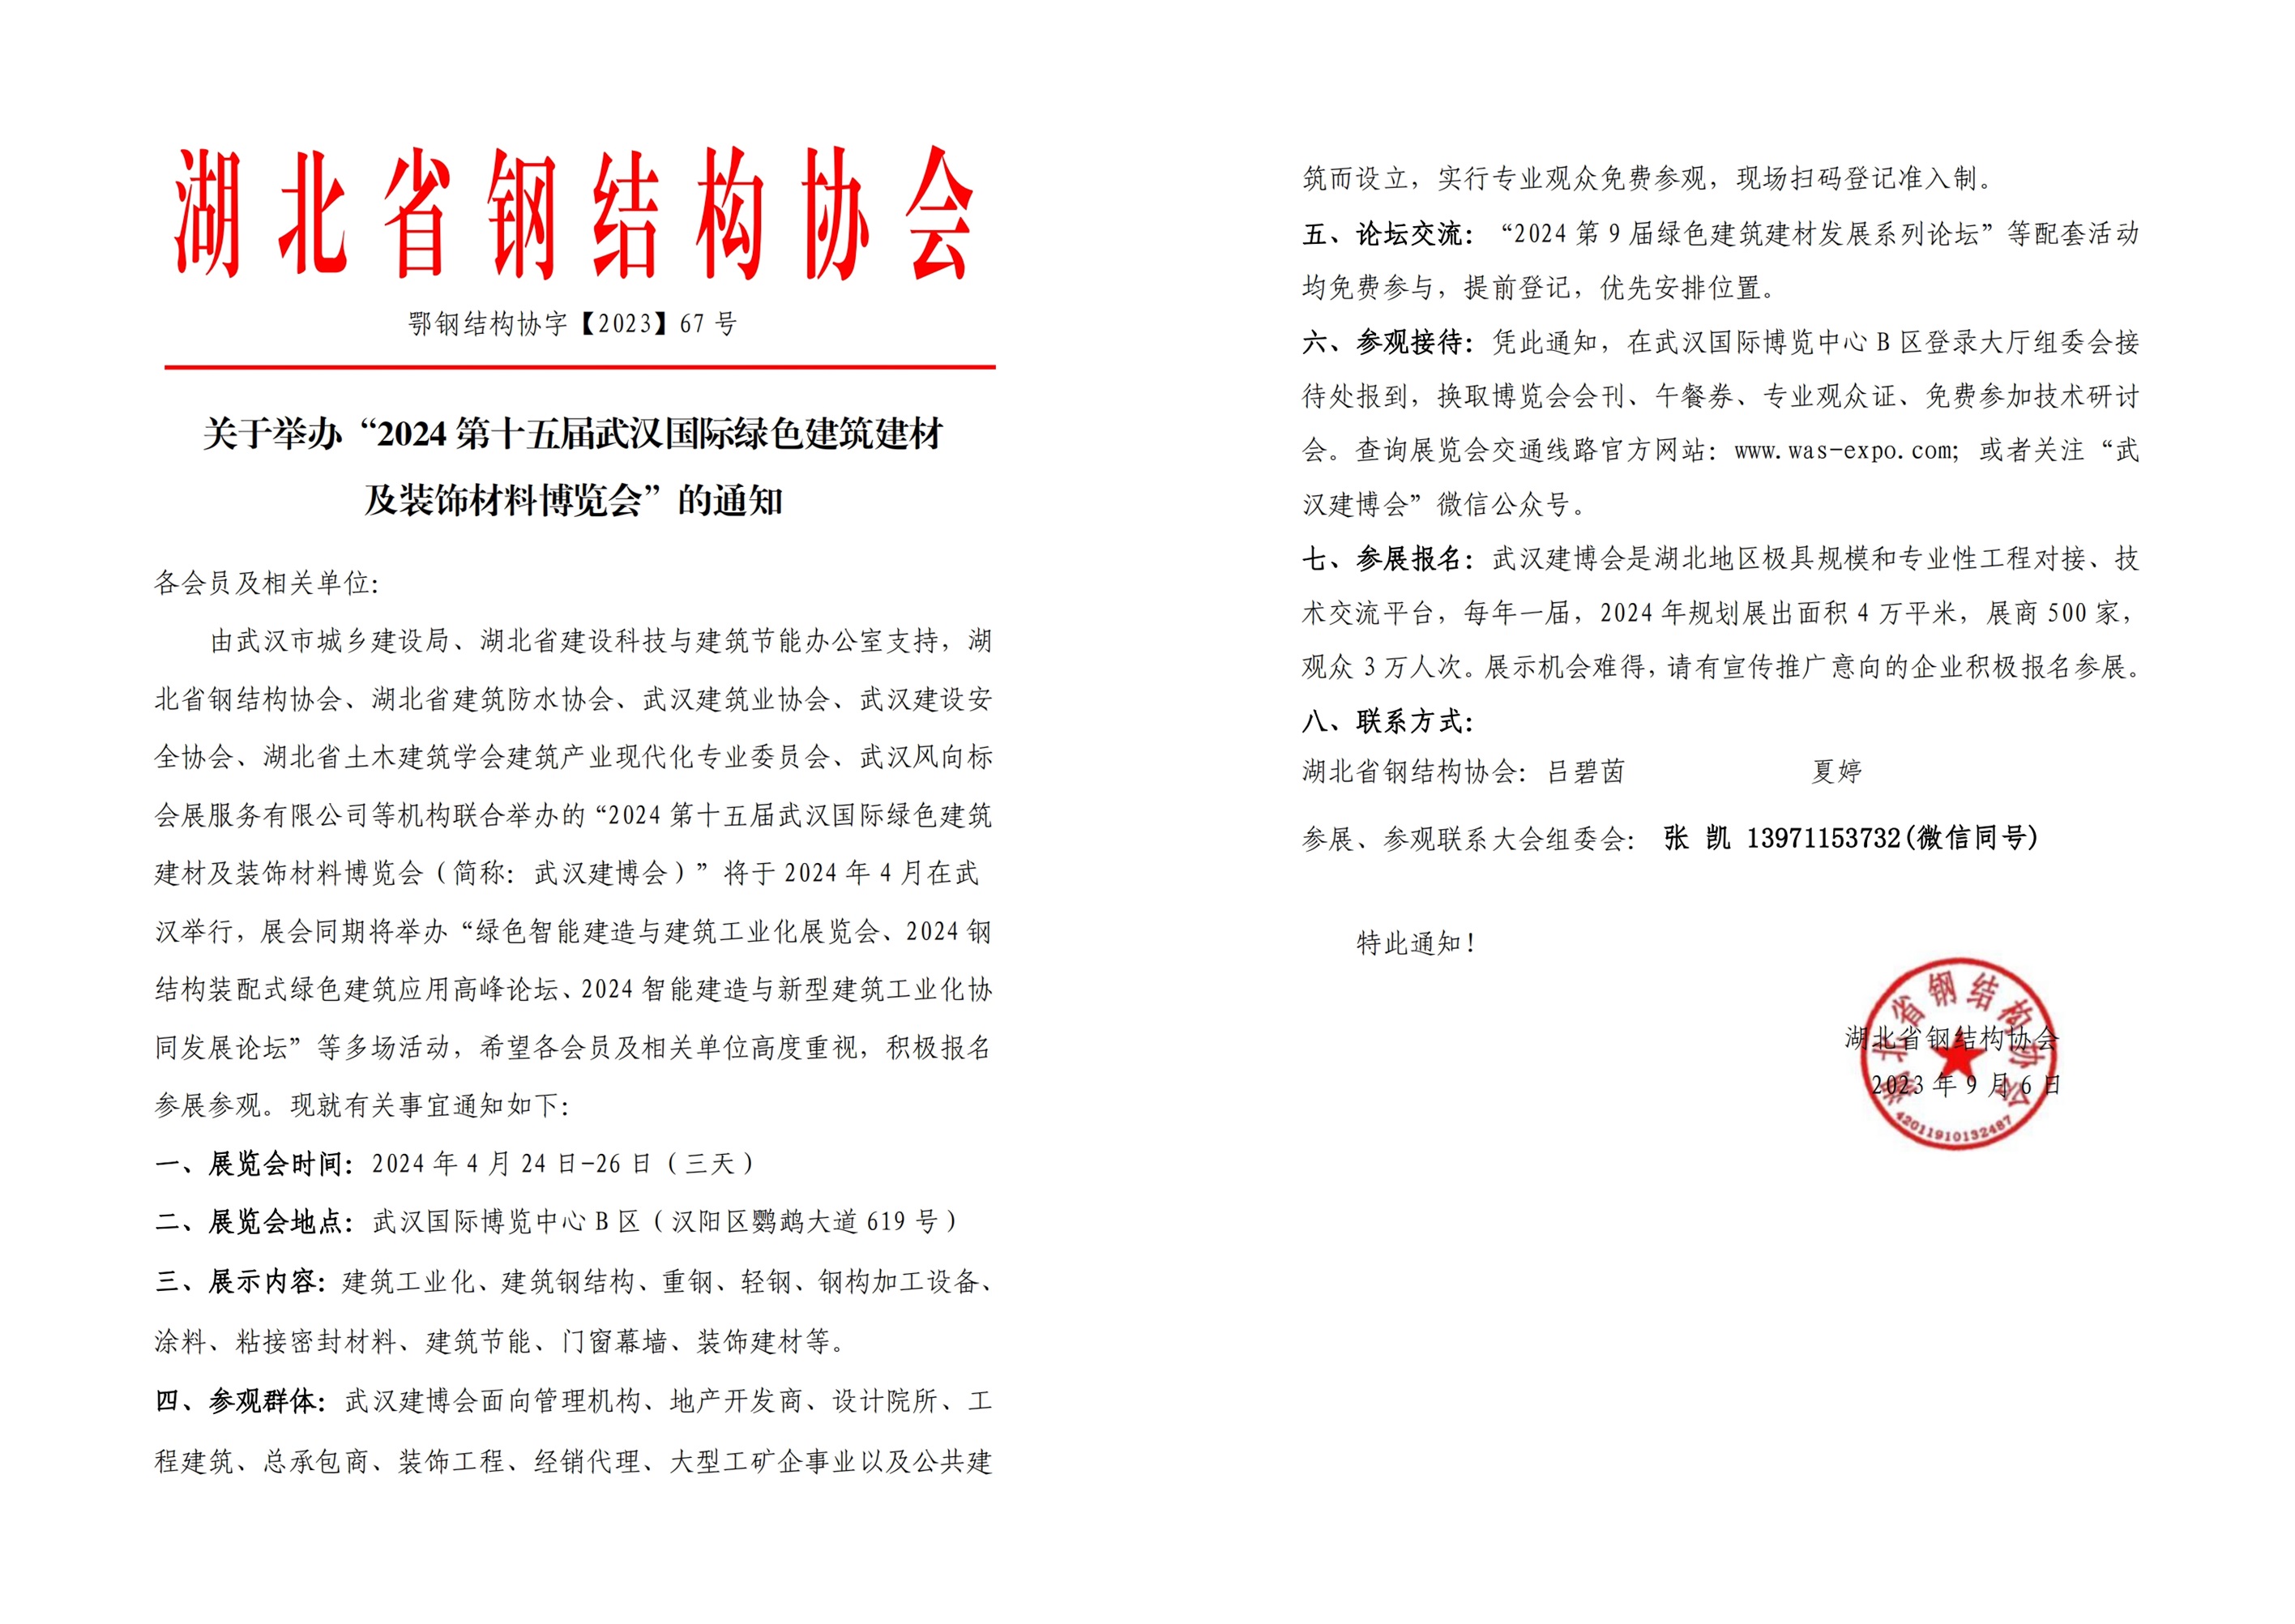 湖北省钢结构协会通知文件.jpg